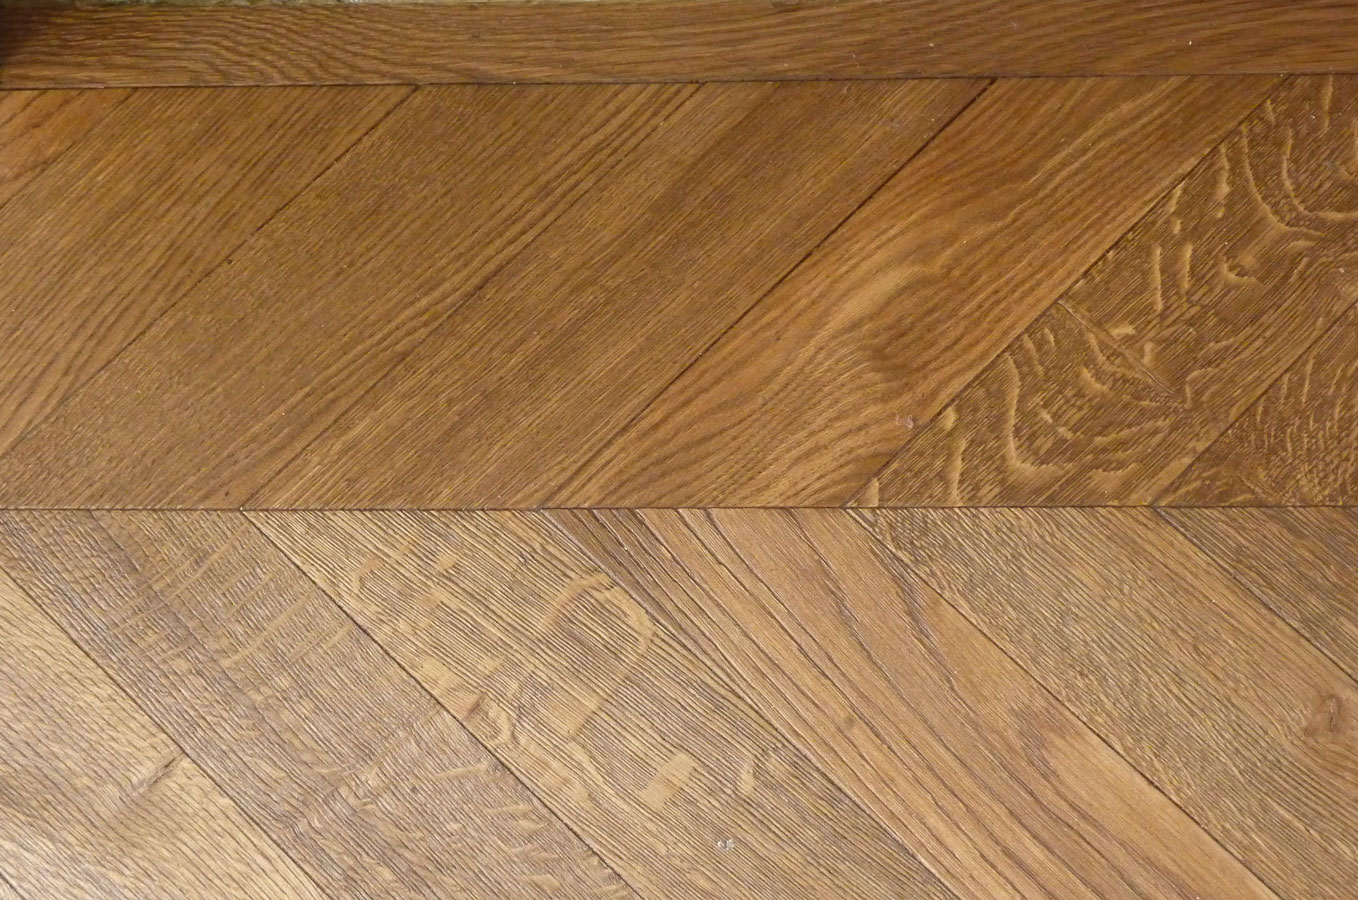 Parquet floor in solid oak